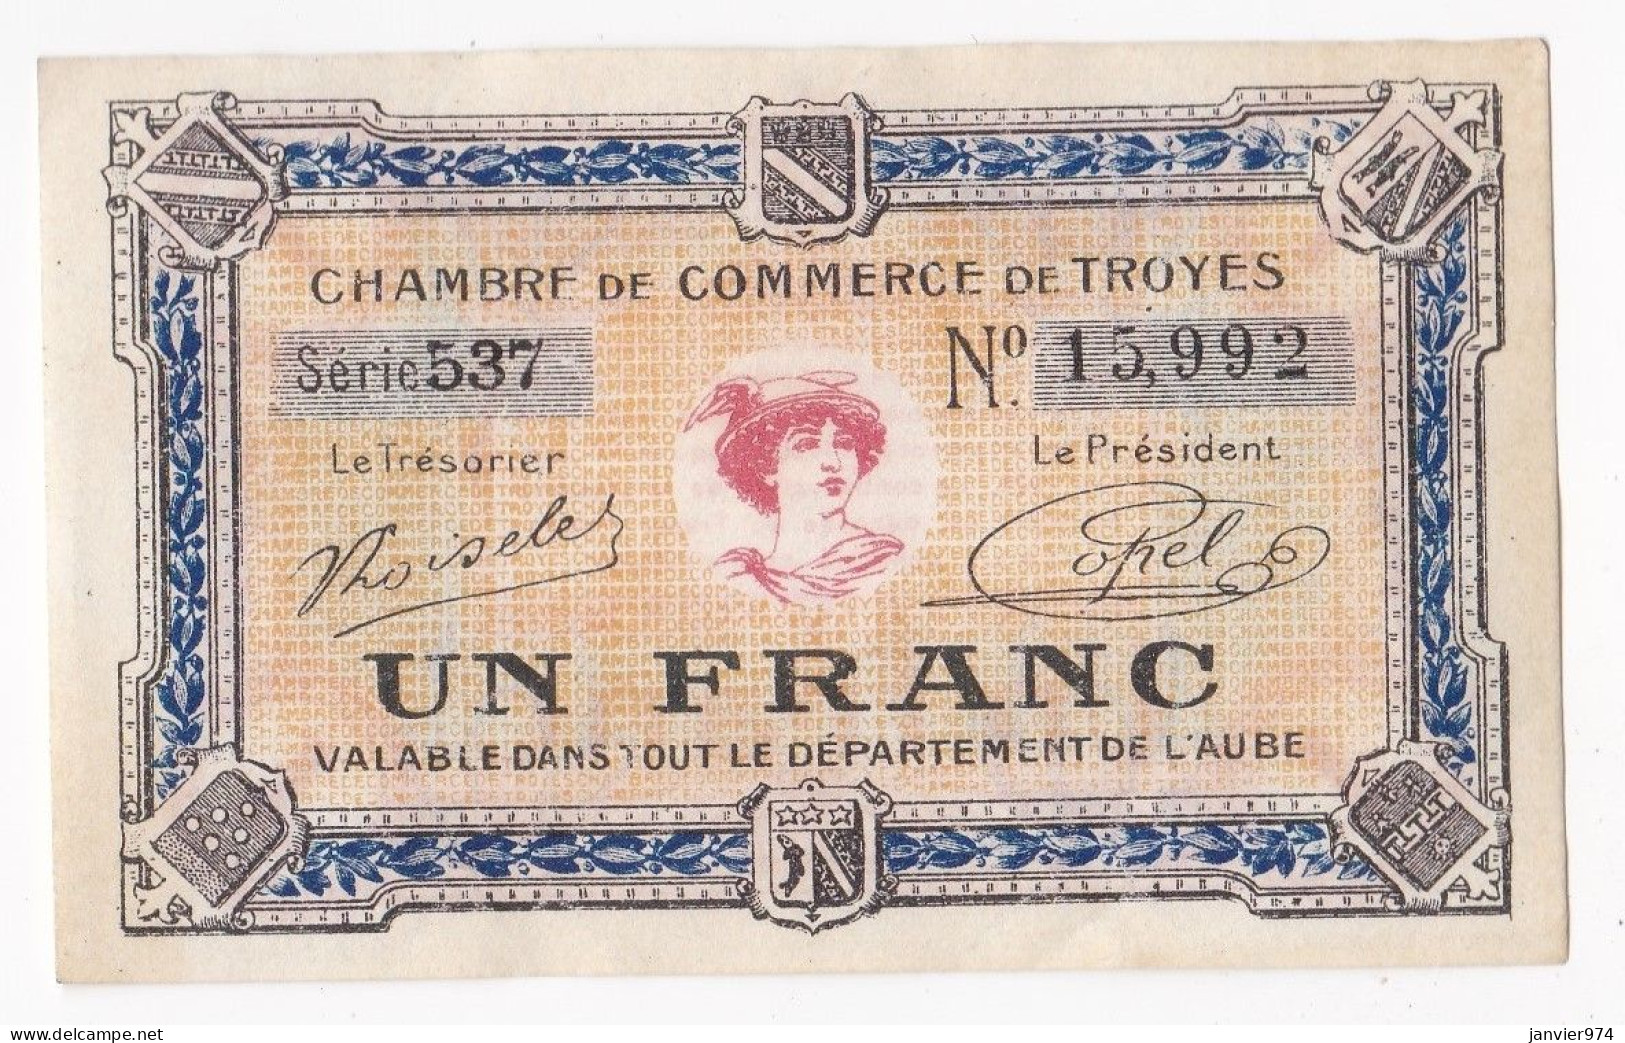 Aude . Chambre De Commerce De Troyes 1 Franc 1926 Serie 537 . N° 15,992 - Chambre De Commerce